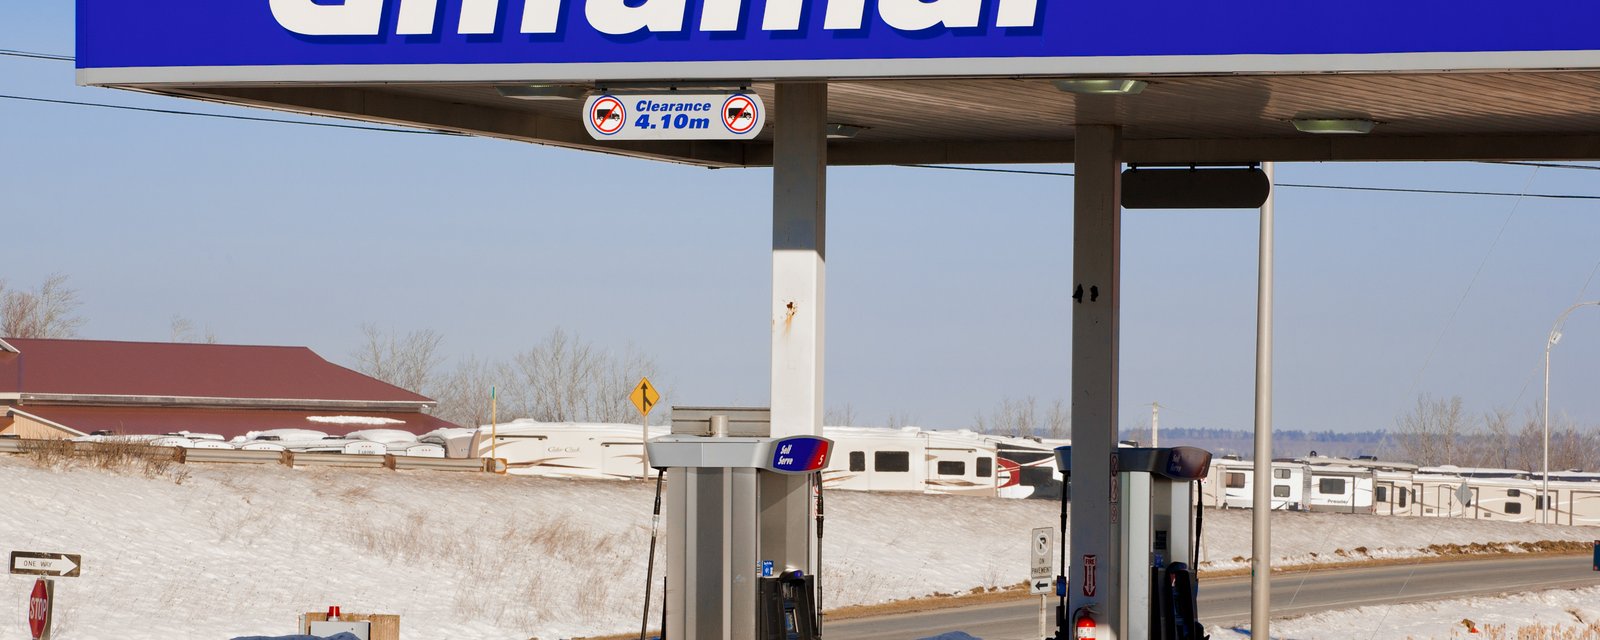 C'est dans cette ville que coûte l'essence la plus chère au Québec